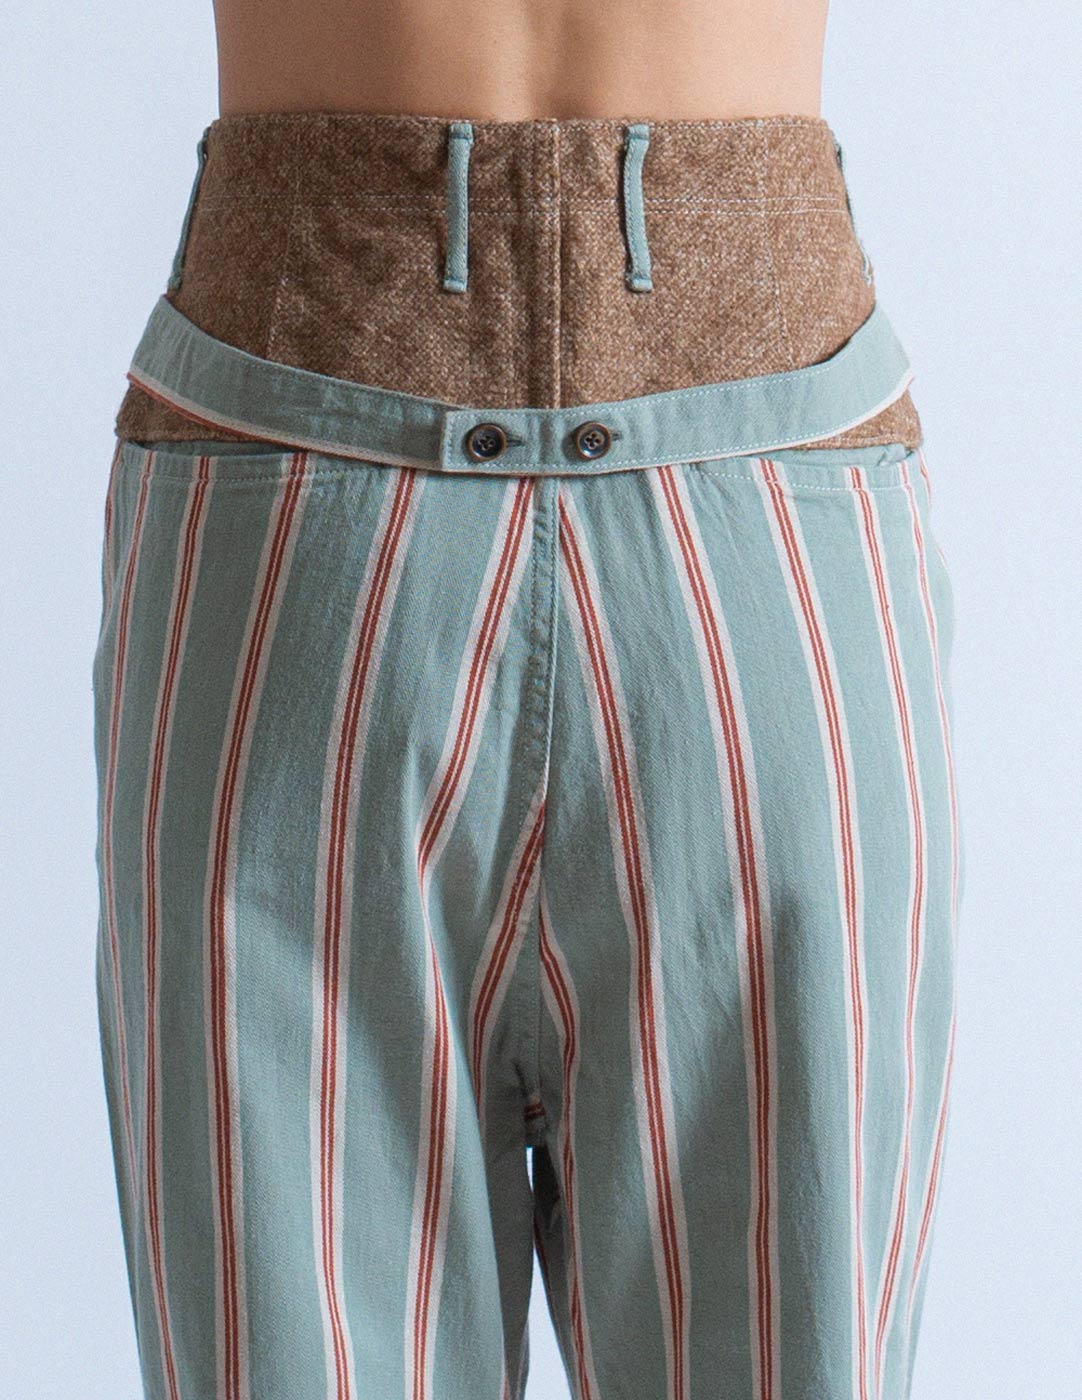 Kapital striped cotton pants detail